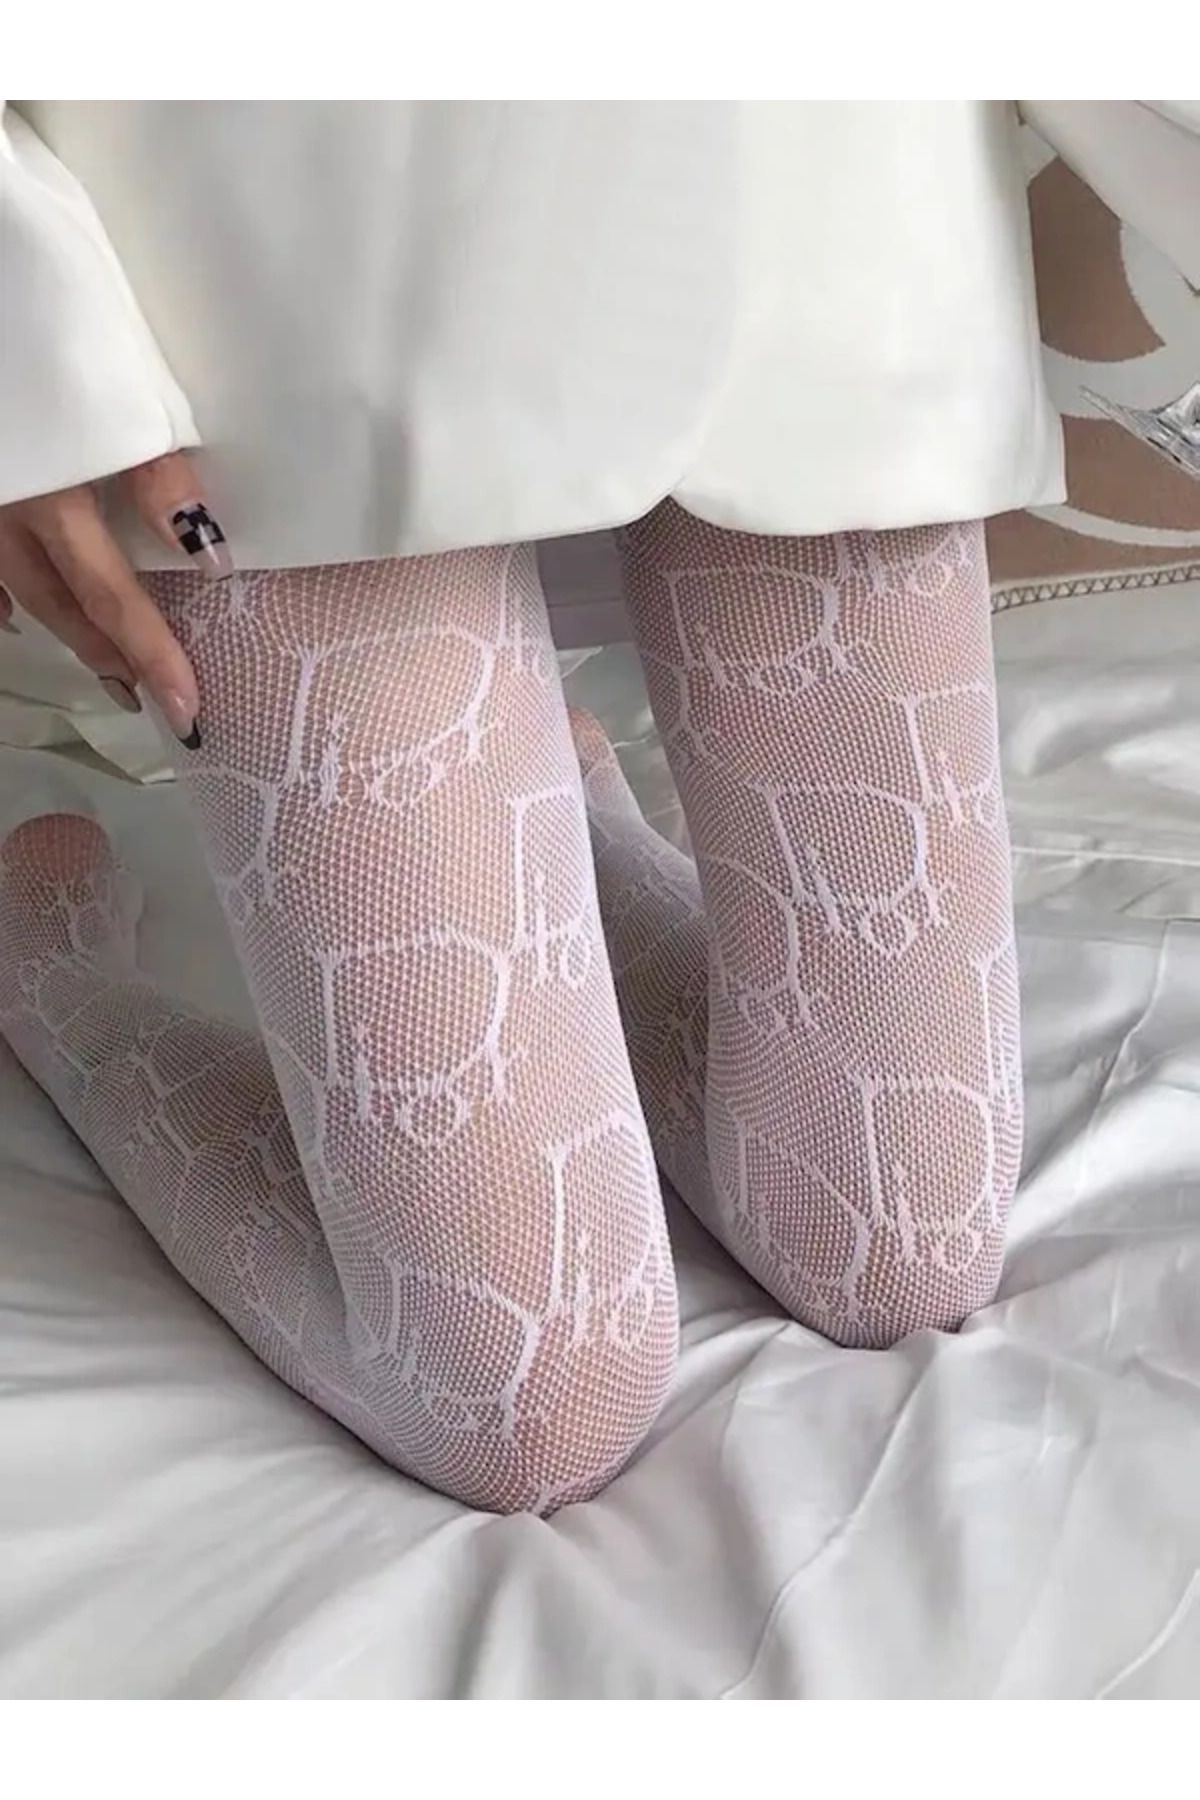 VEGAROKS Yazılı Beyaz Ithal Külotlu Çorap